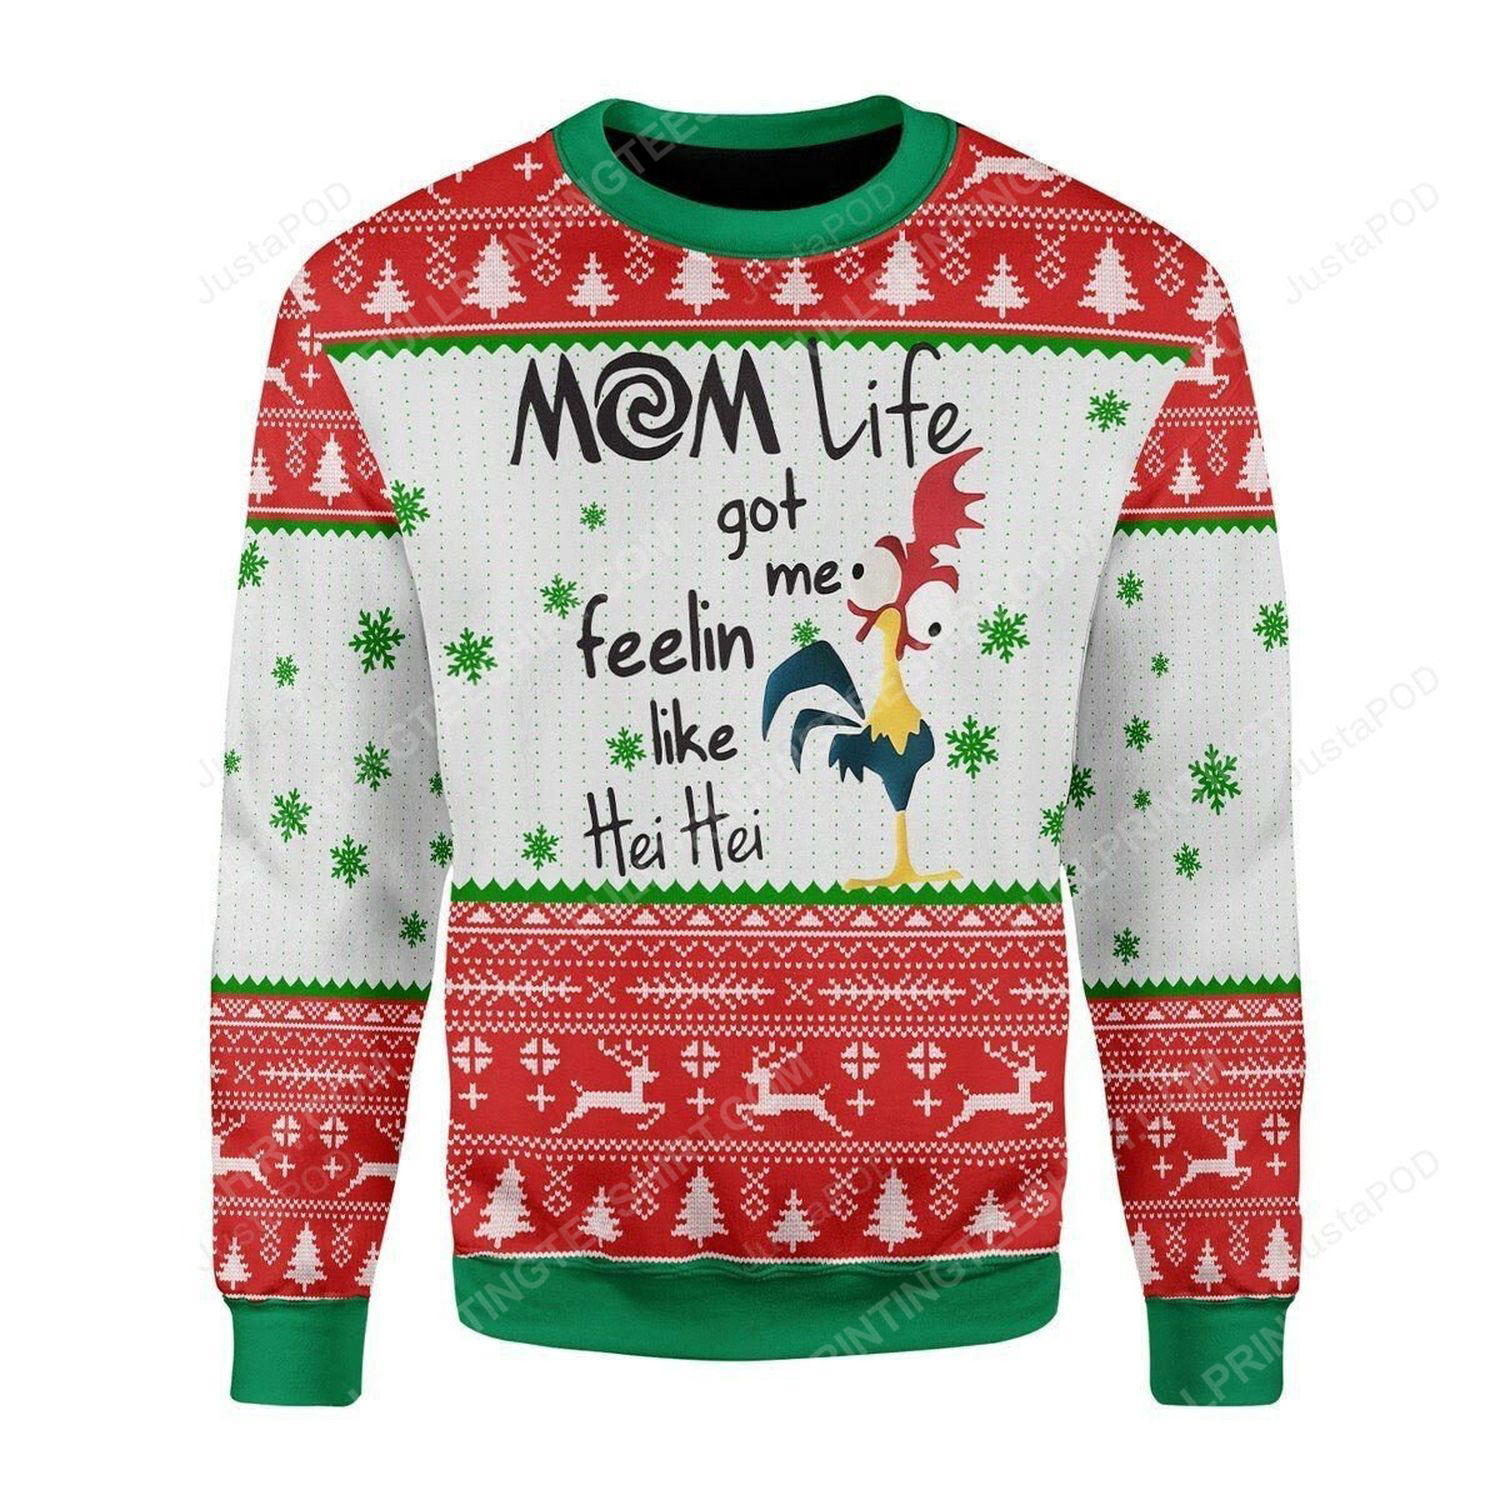 Rooster mom life got me feelin like hei hei ugly christmas sweater